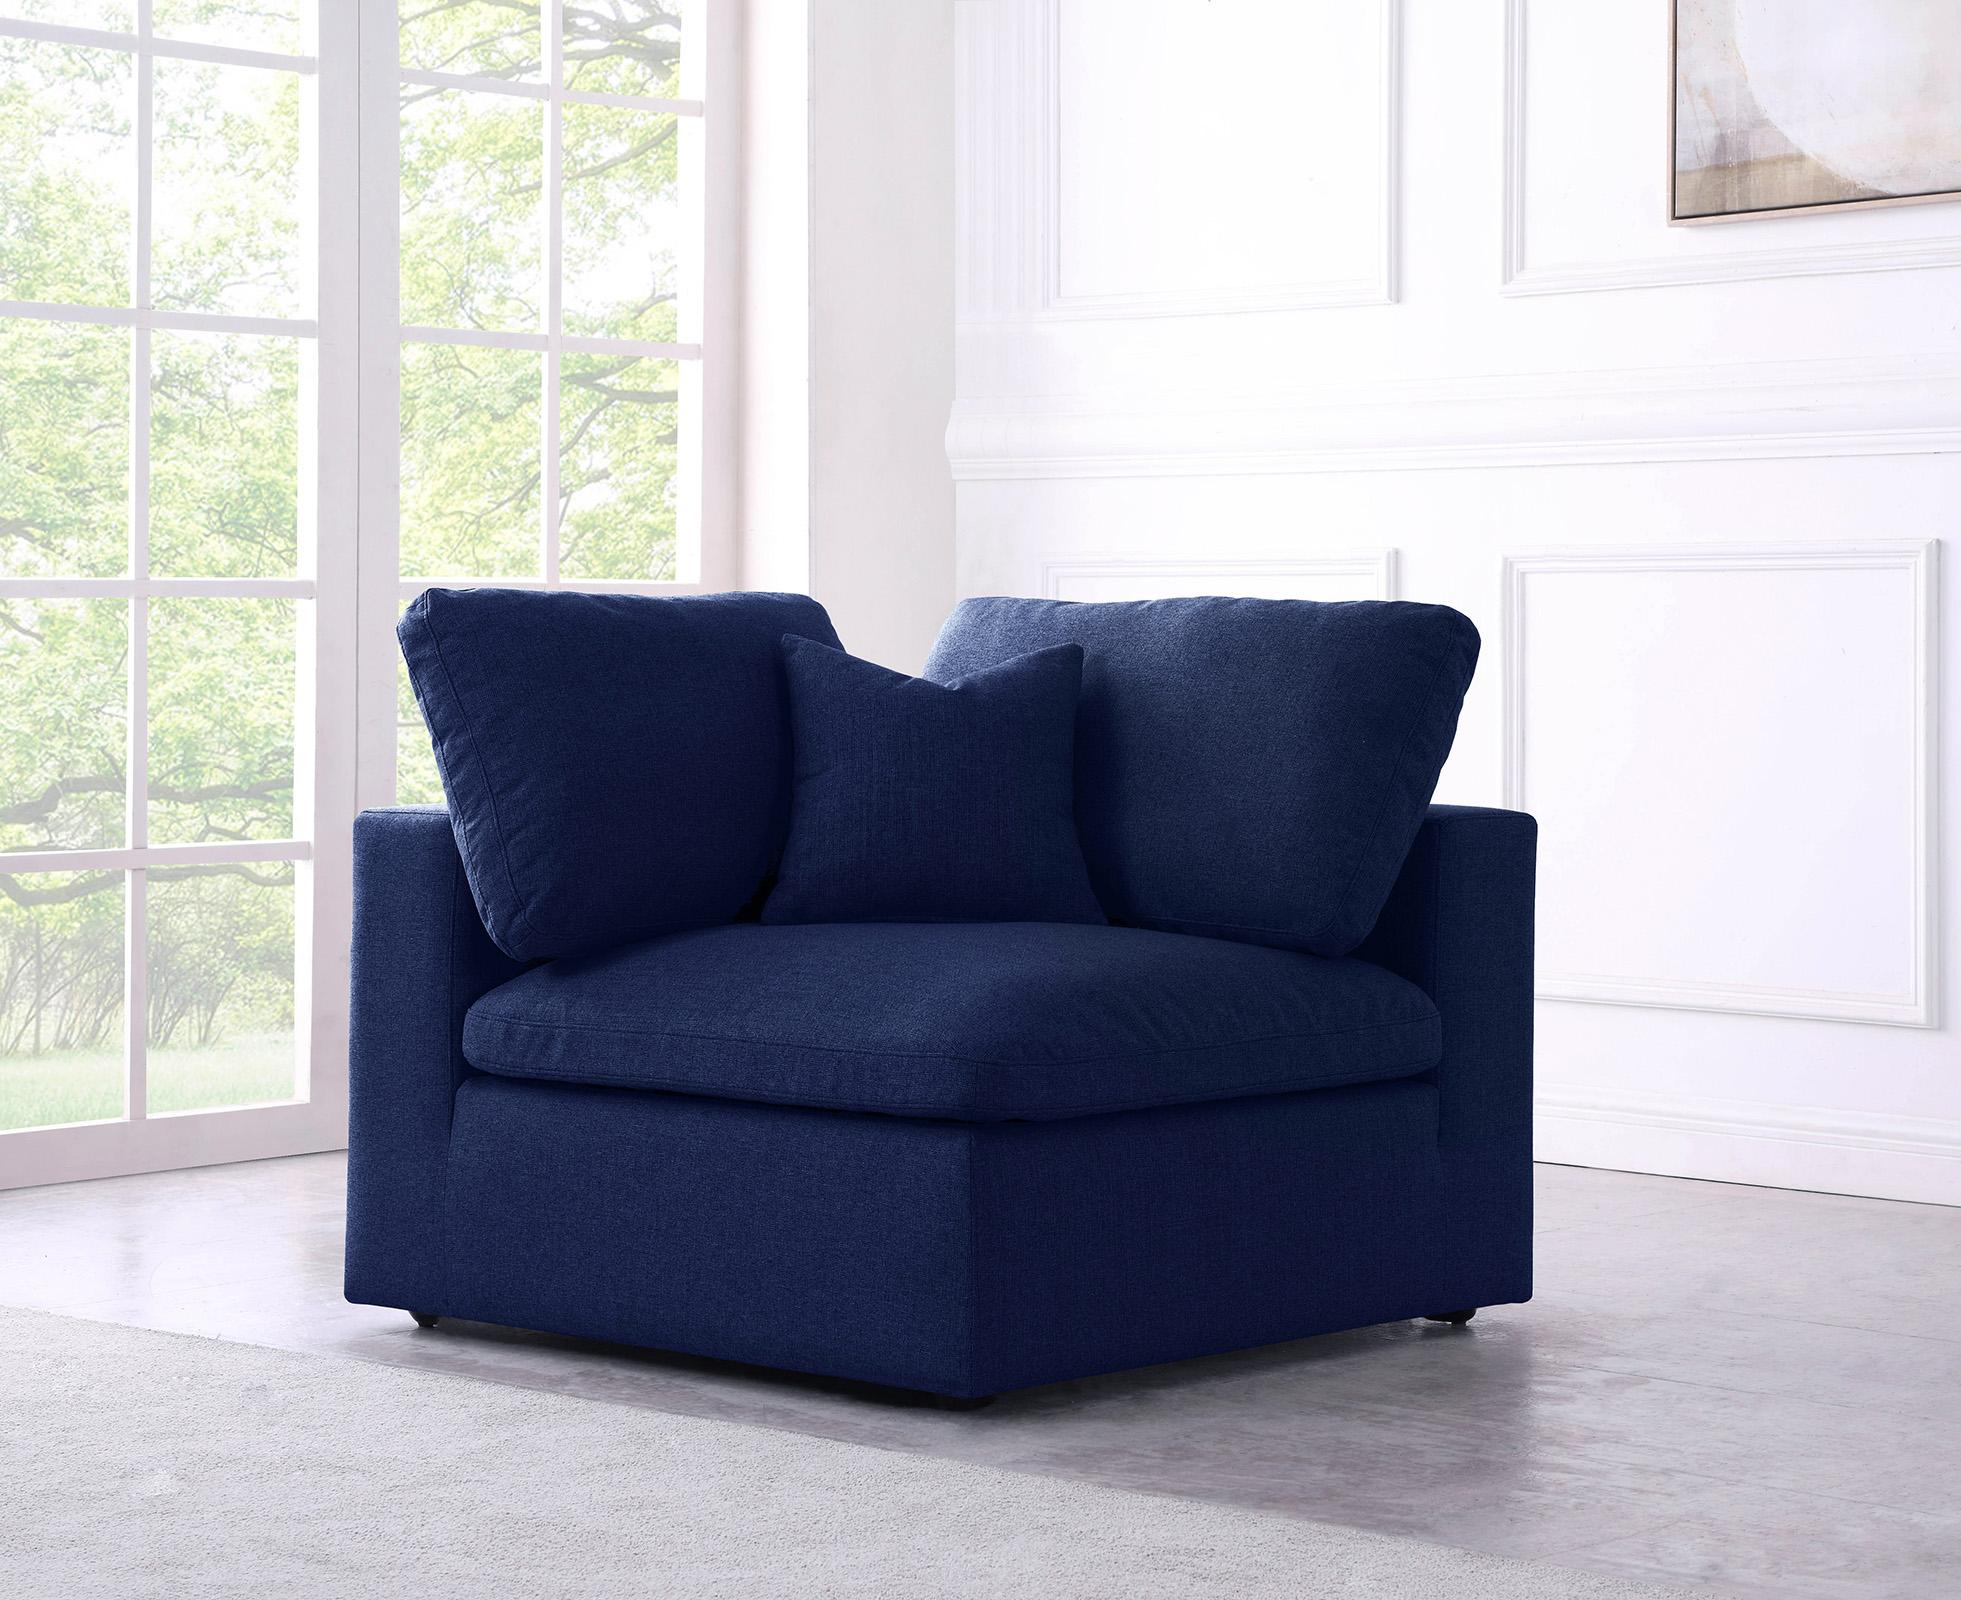 

    
Serene Navy Linen Textured Fabric Deluxe Comfort Corner Chair Meridian
